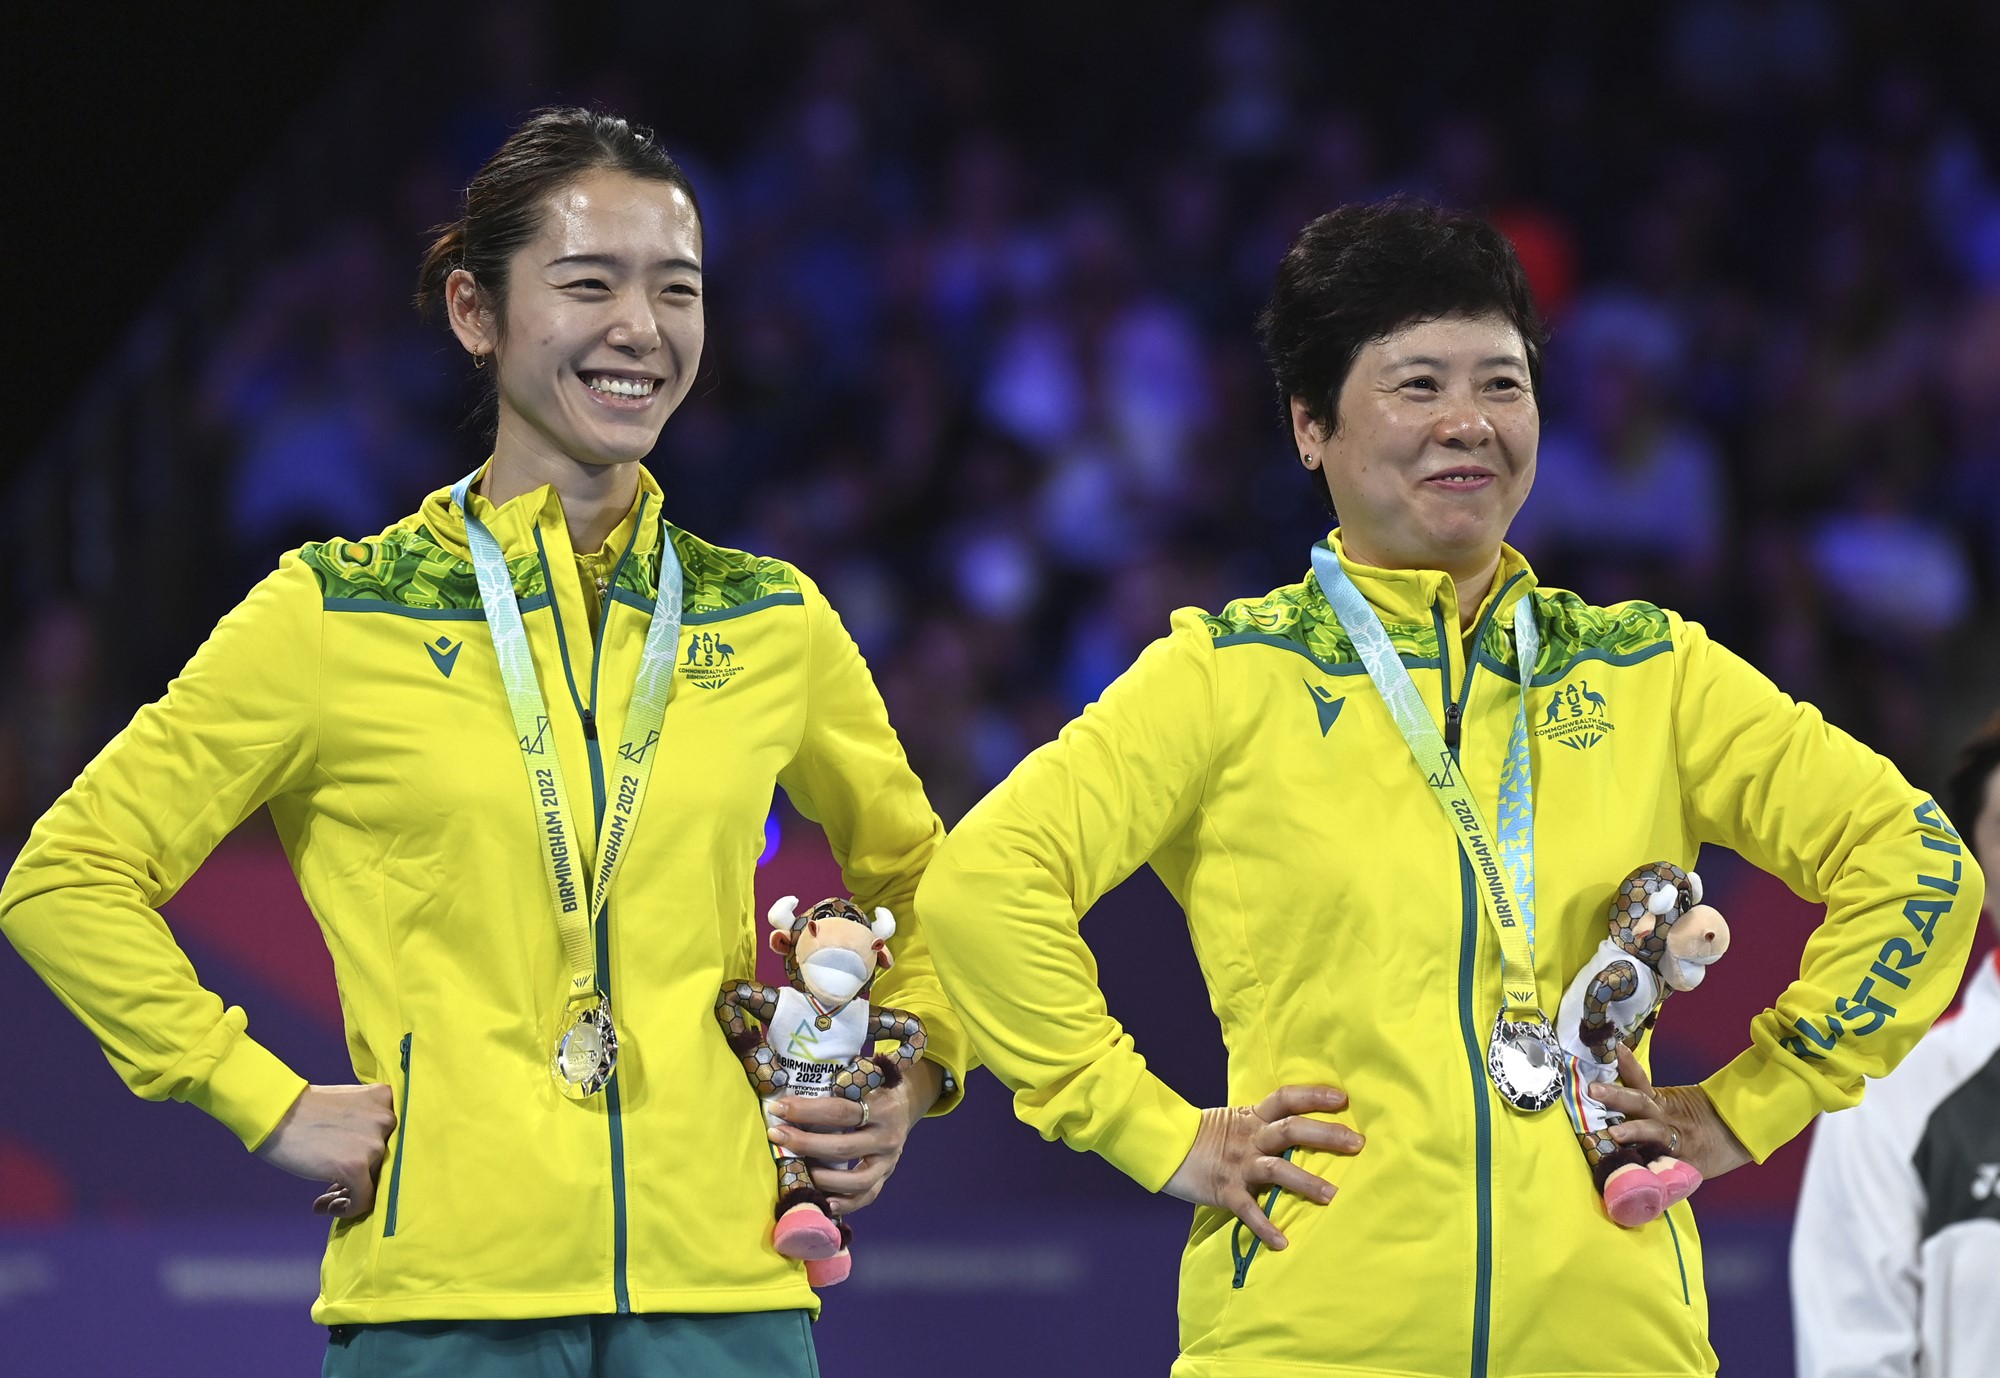 Los jugadores de tenis de mesa Jian Fang Lay y Minhyung Jee sonríen con las manos en las caderas en el podio de los Juegos de la Commonwealth.